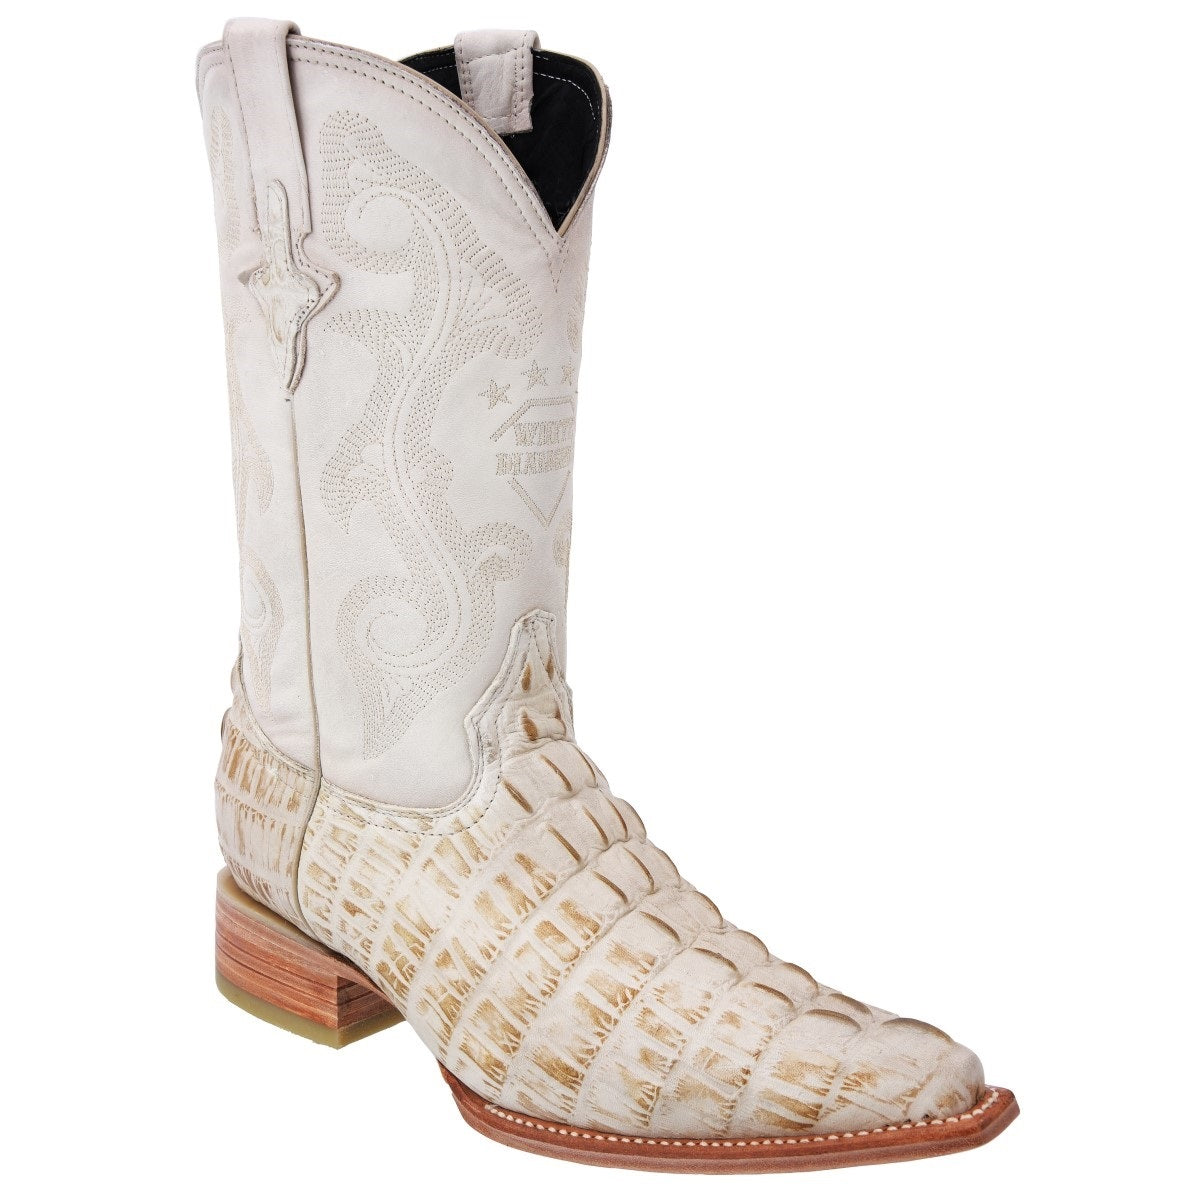 Botas Vaqueras TM-WD0156 - Western Boots